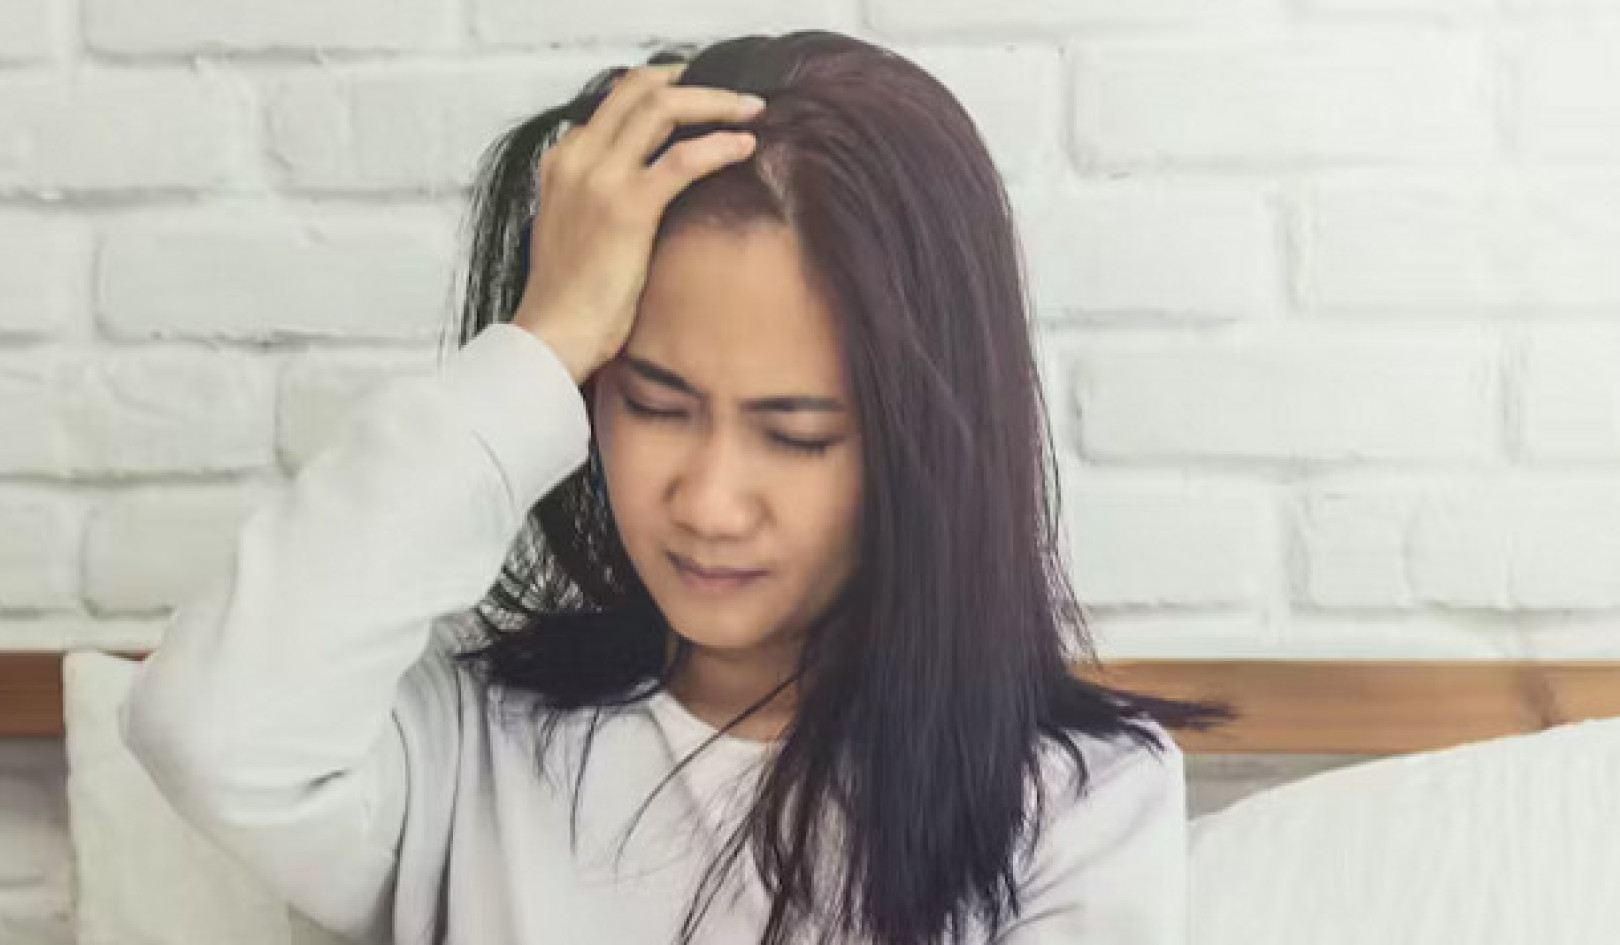 Migreeni: Alidiagnosoitu ja alihoidettu päänsärkyhäiriö